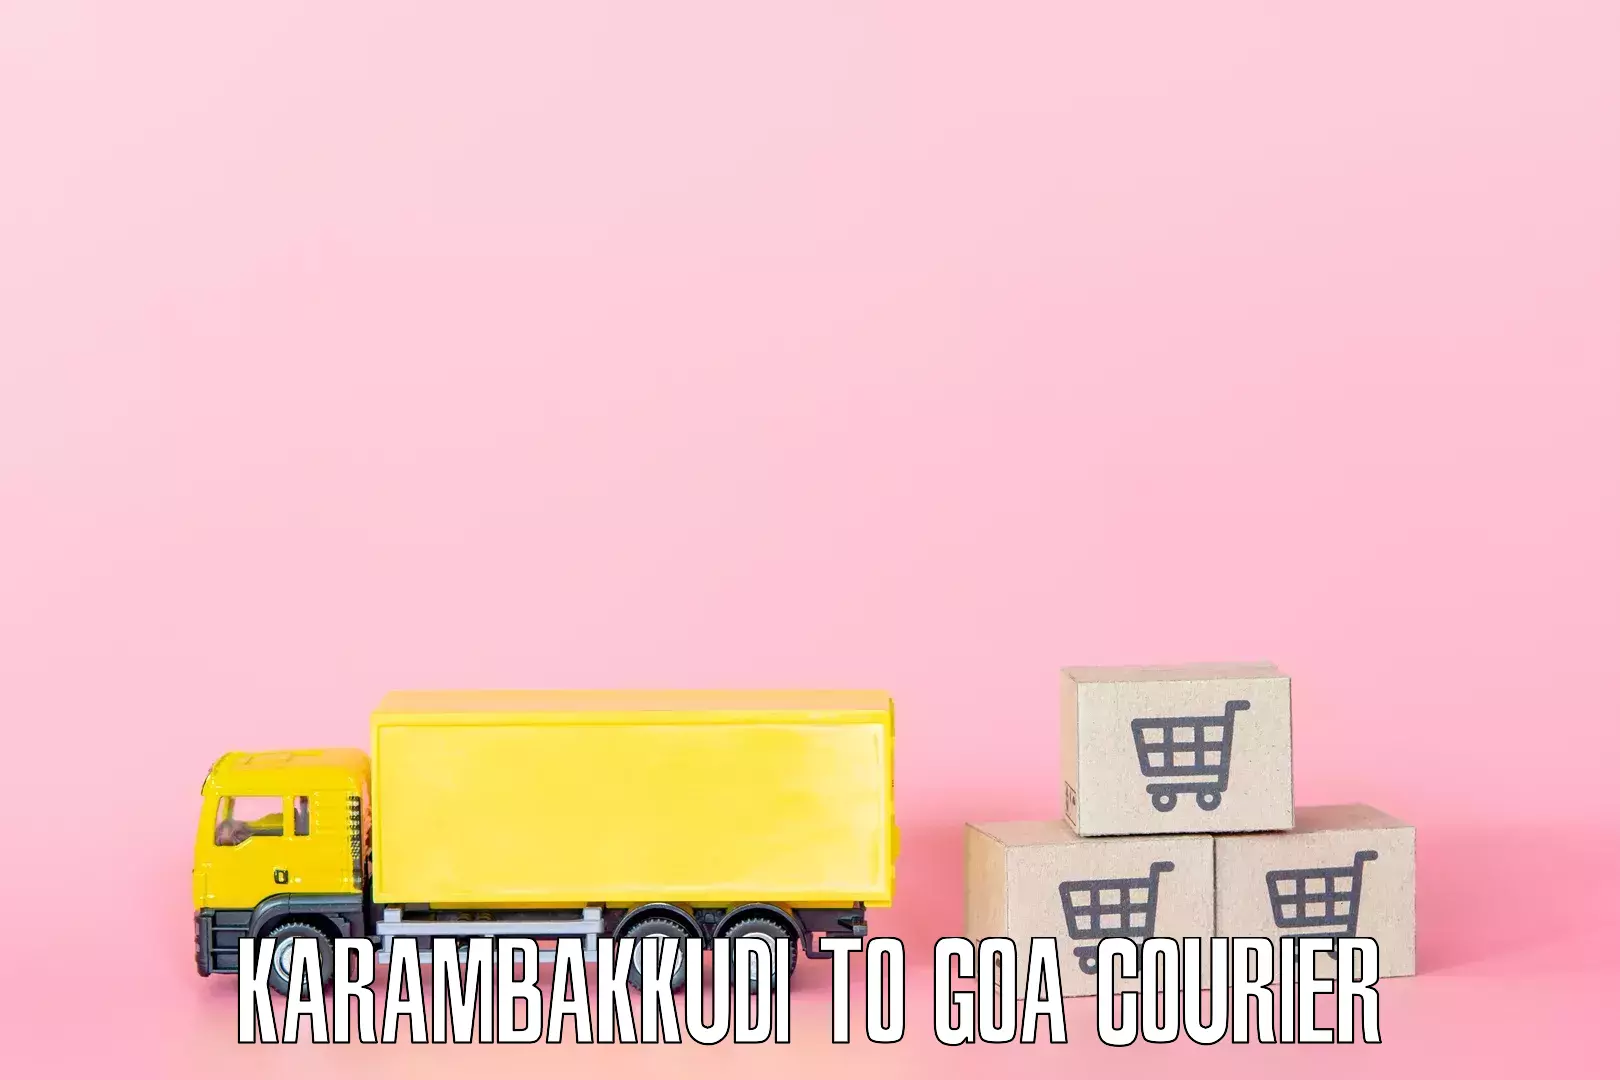 Moving and handling services Karambakkudi to NIT Goa